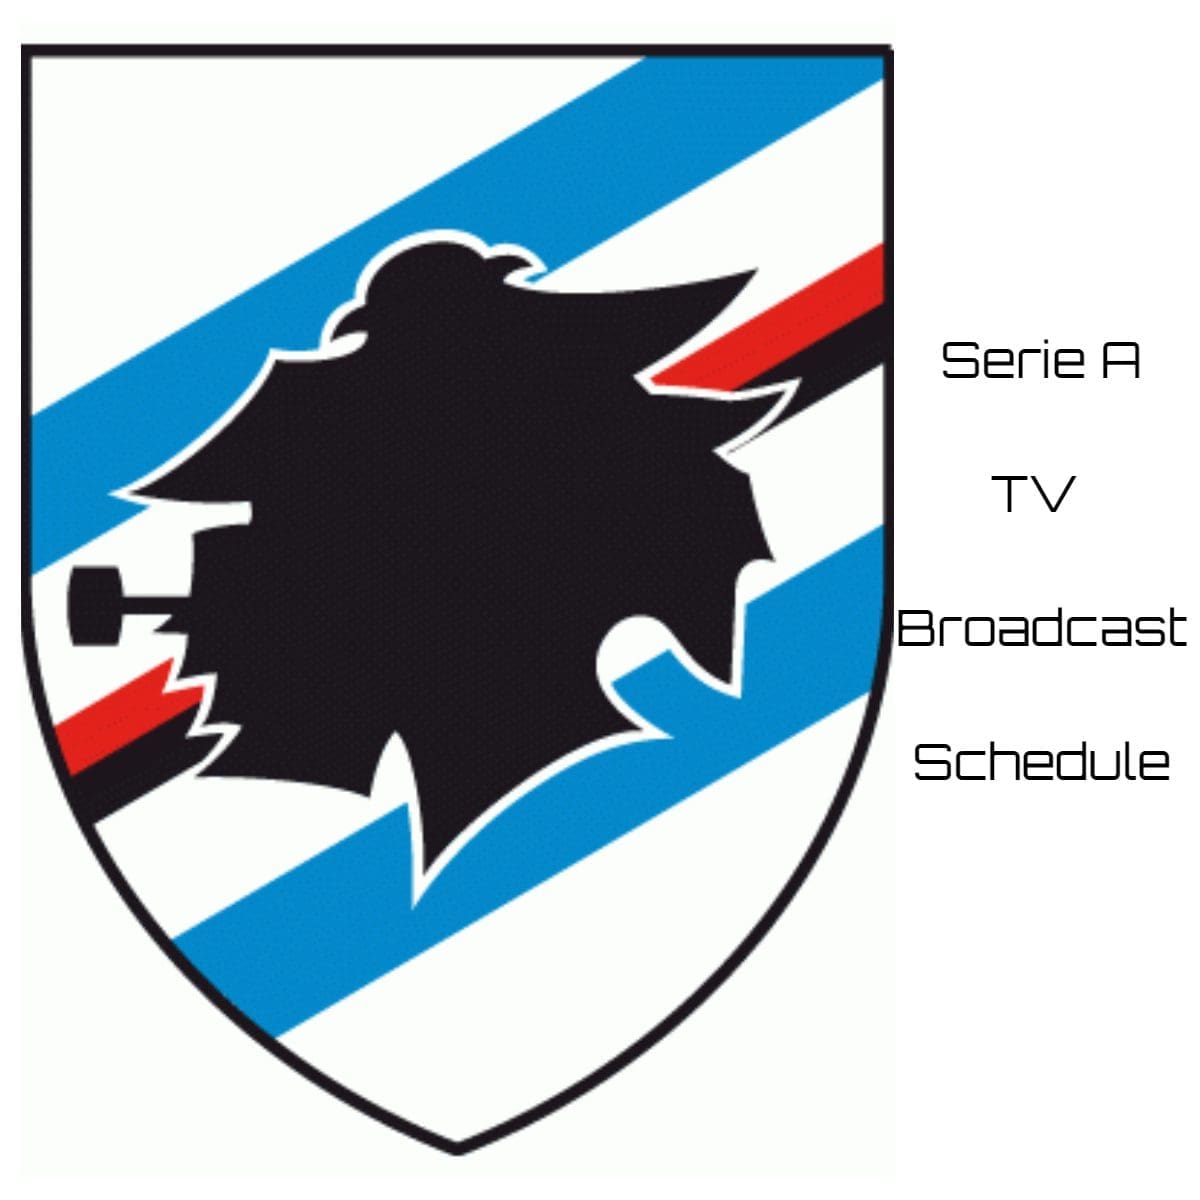 Sampdoria TV Broadcast Schedule